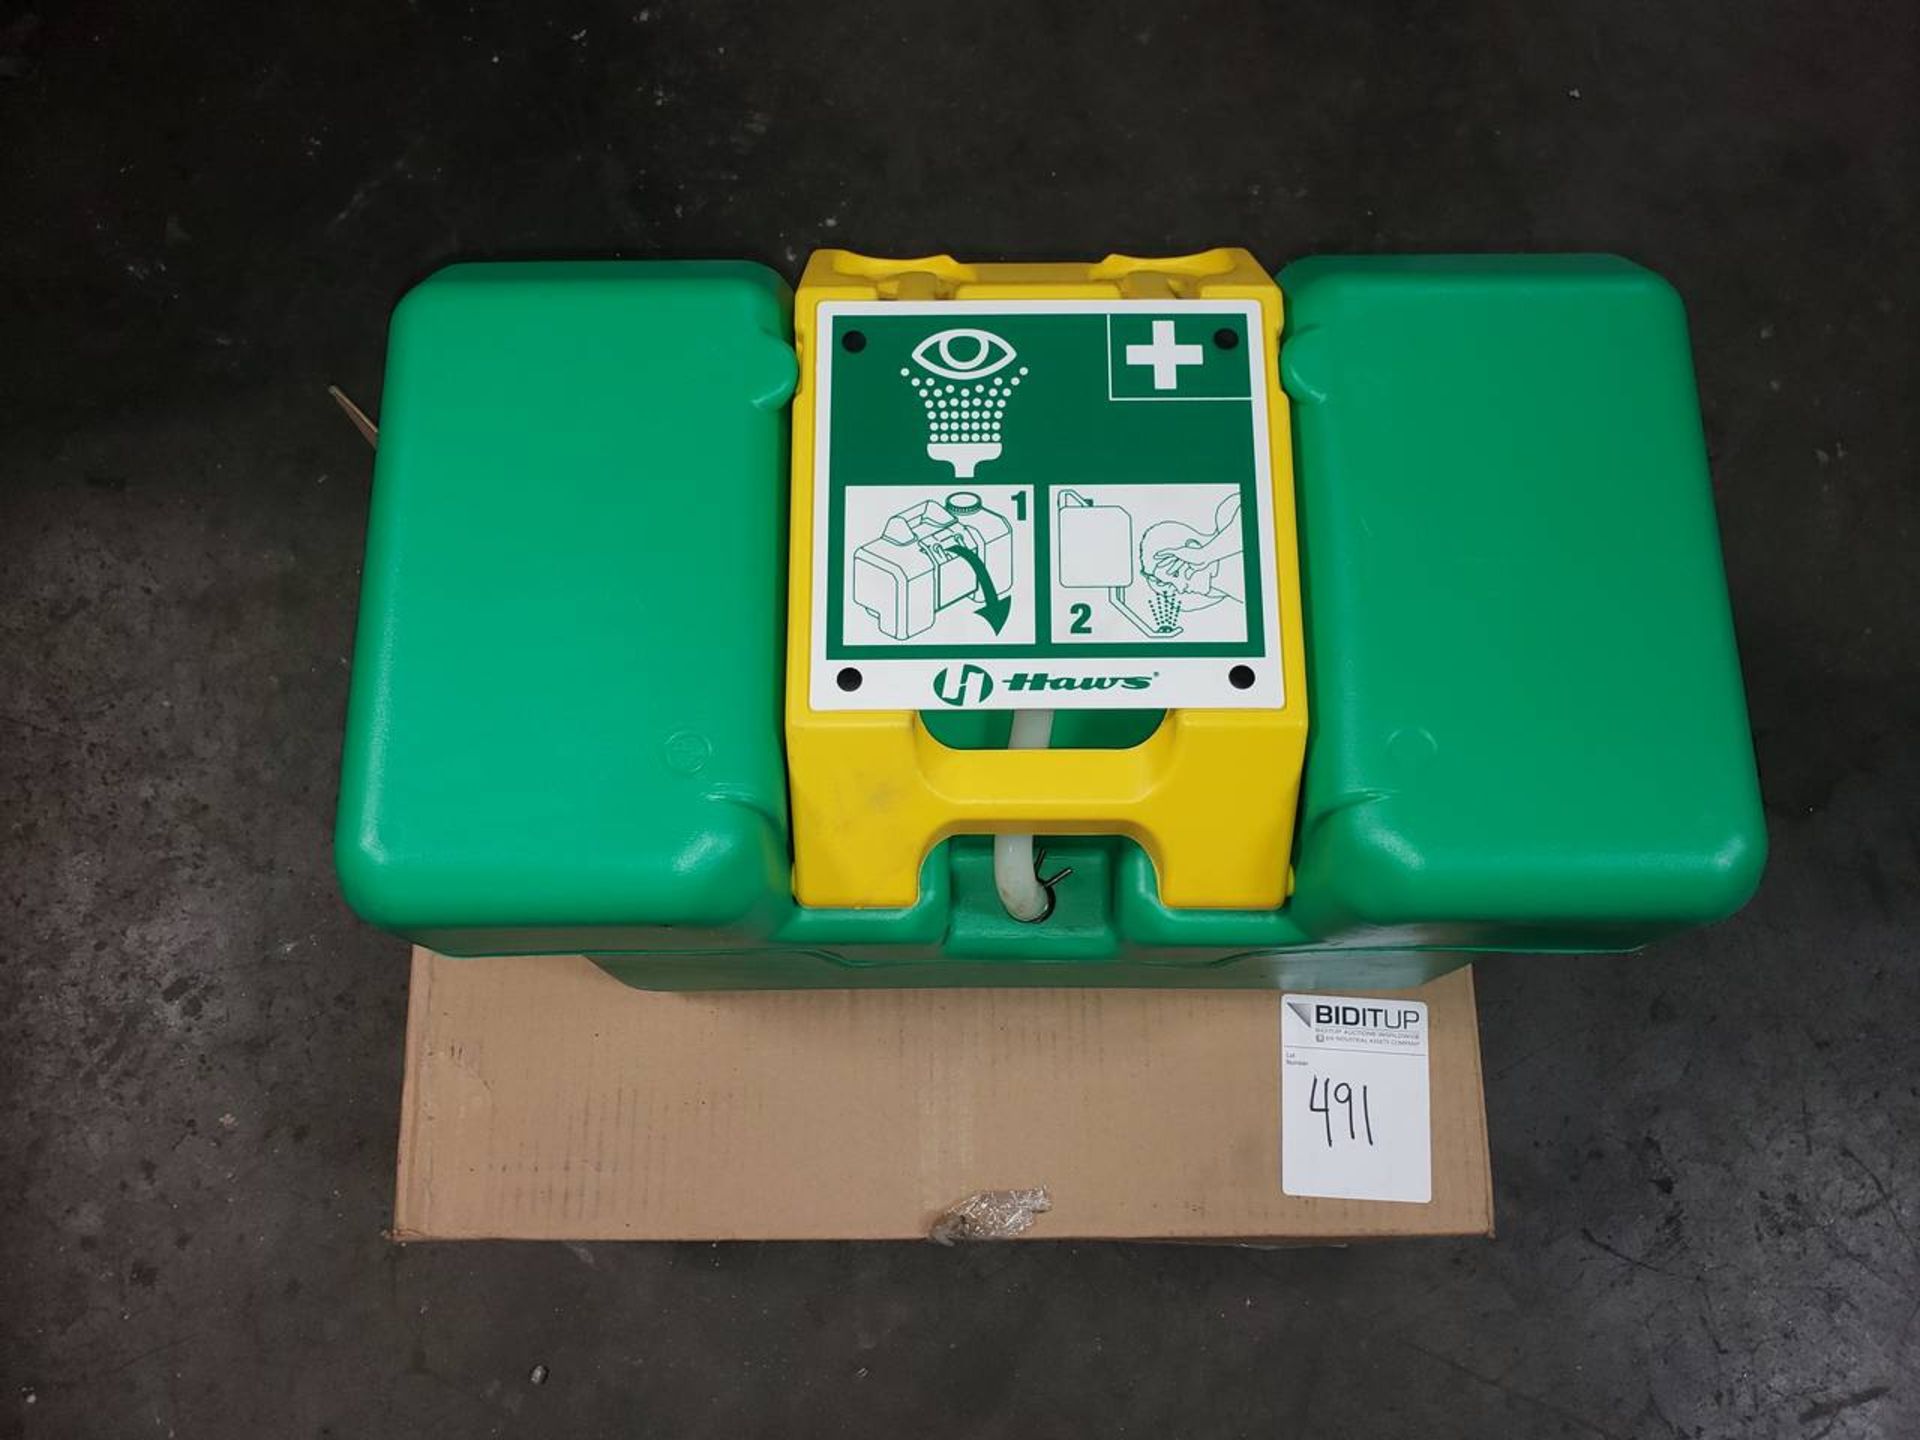 Haws 7501 Portable Emergency Eyewash Station New In Box